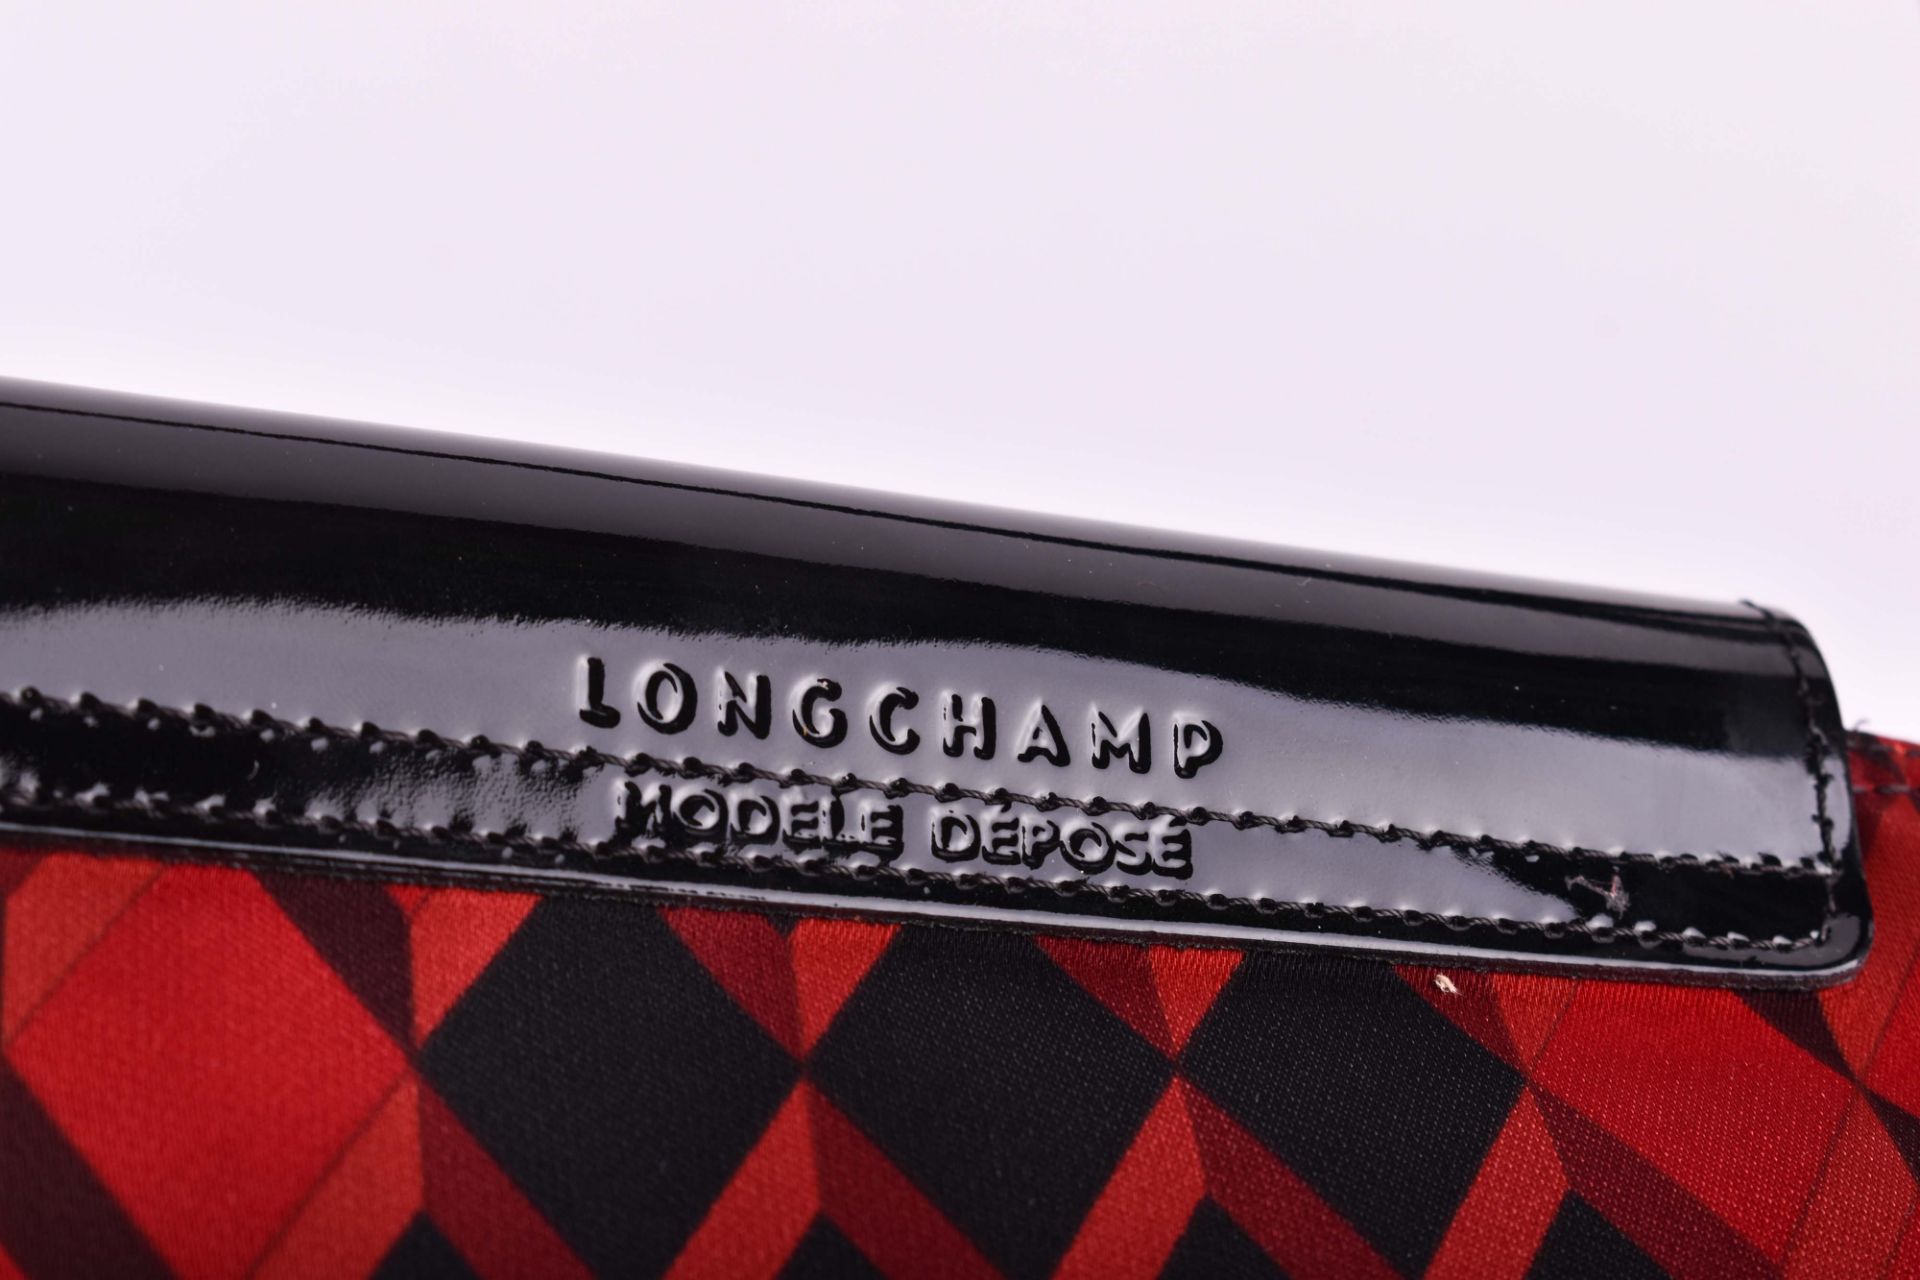 Handtasche Longchamp Le Pliage modele depose - Bild 6 aus 6